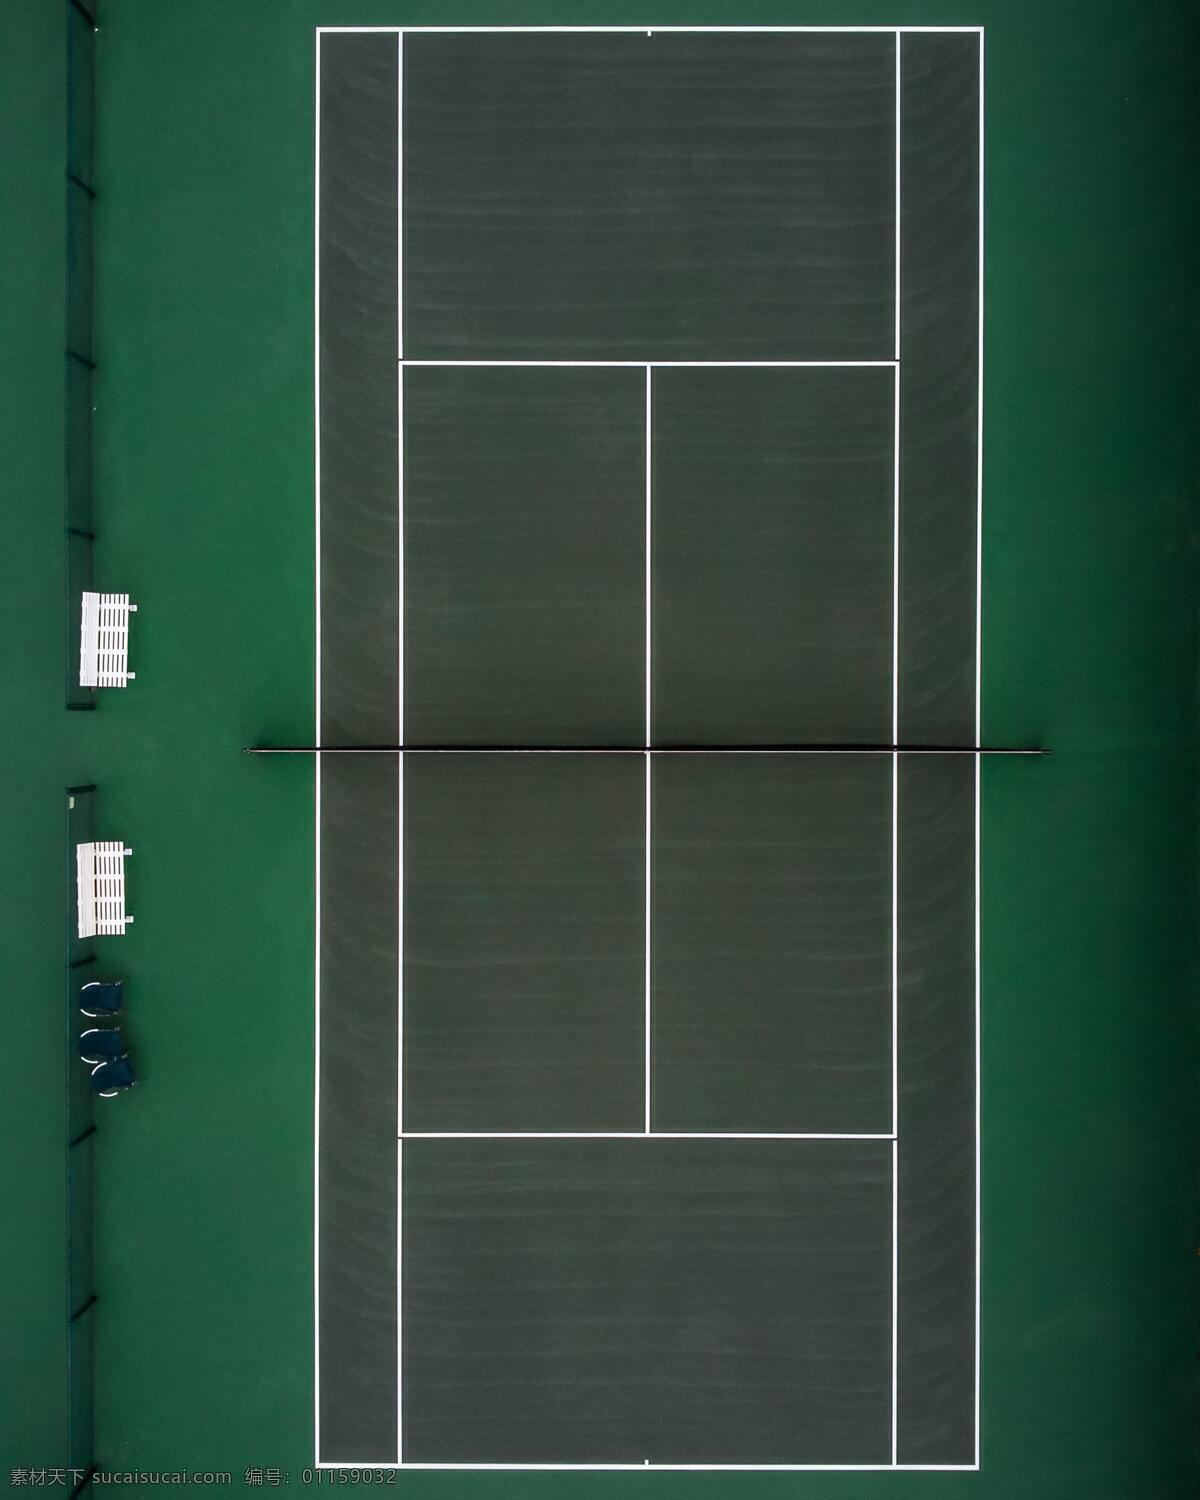 一个 网球 球场 俯 拍 网球场 球场俯拍 运动 场地 球场俯拍图 球场标准图 球场规格 图库未分类图 建筑园林